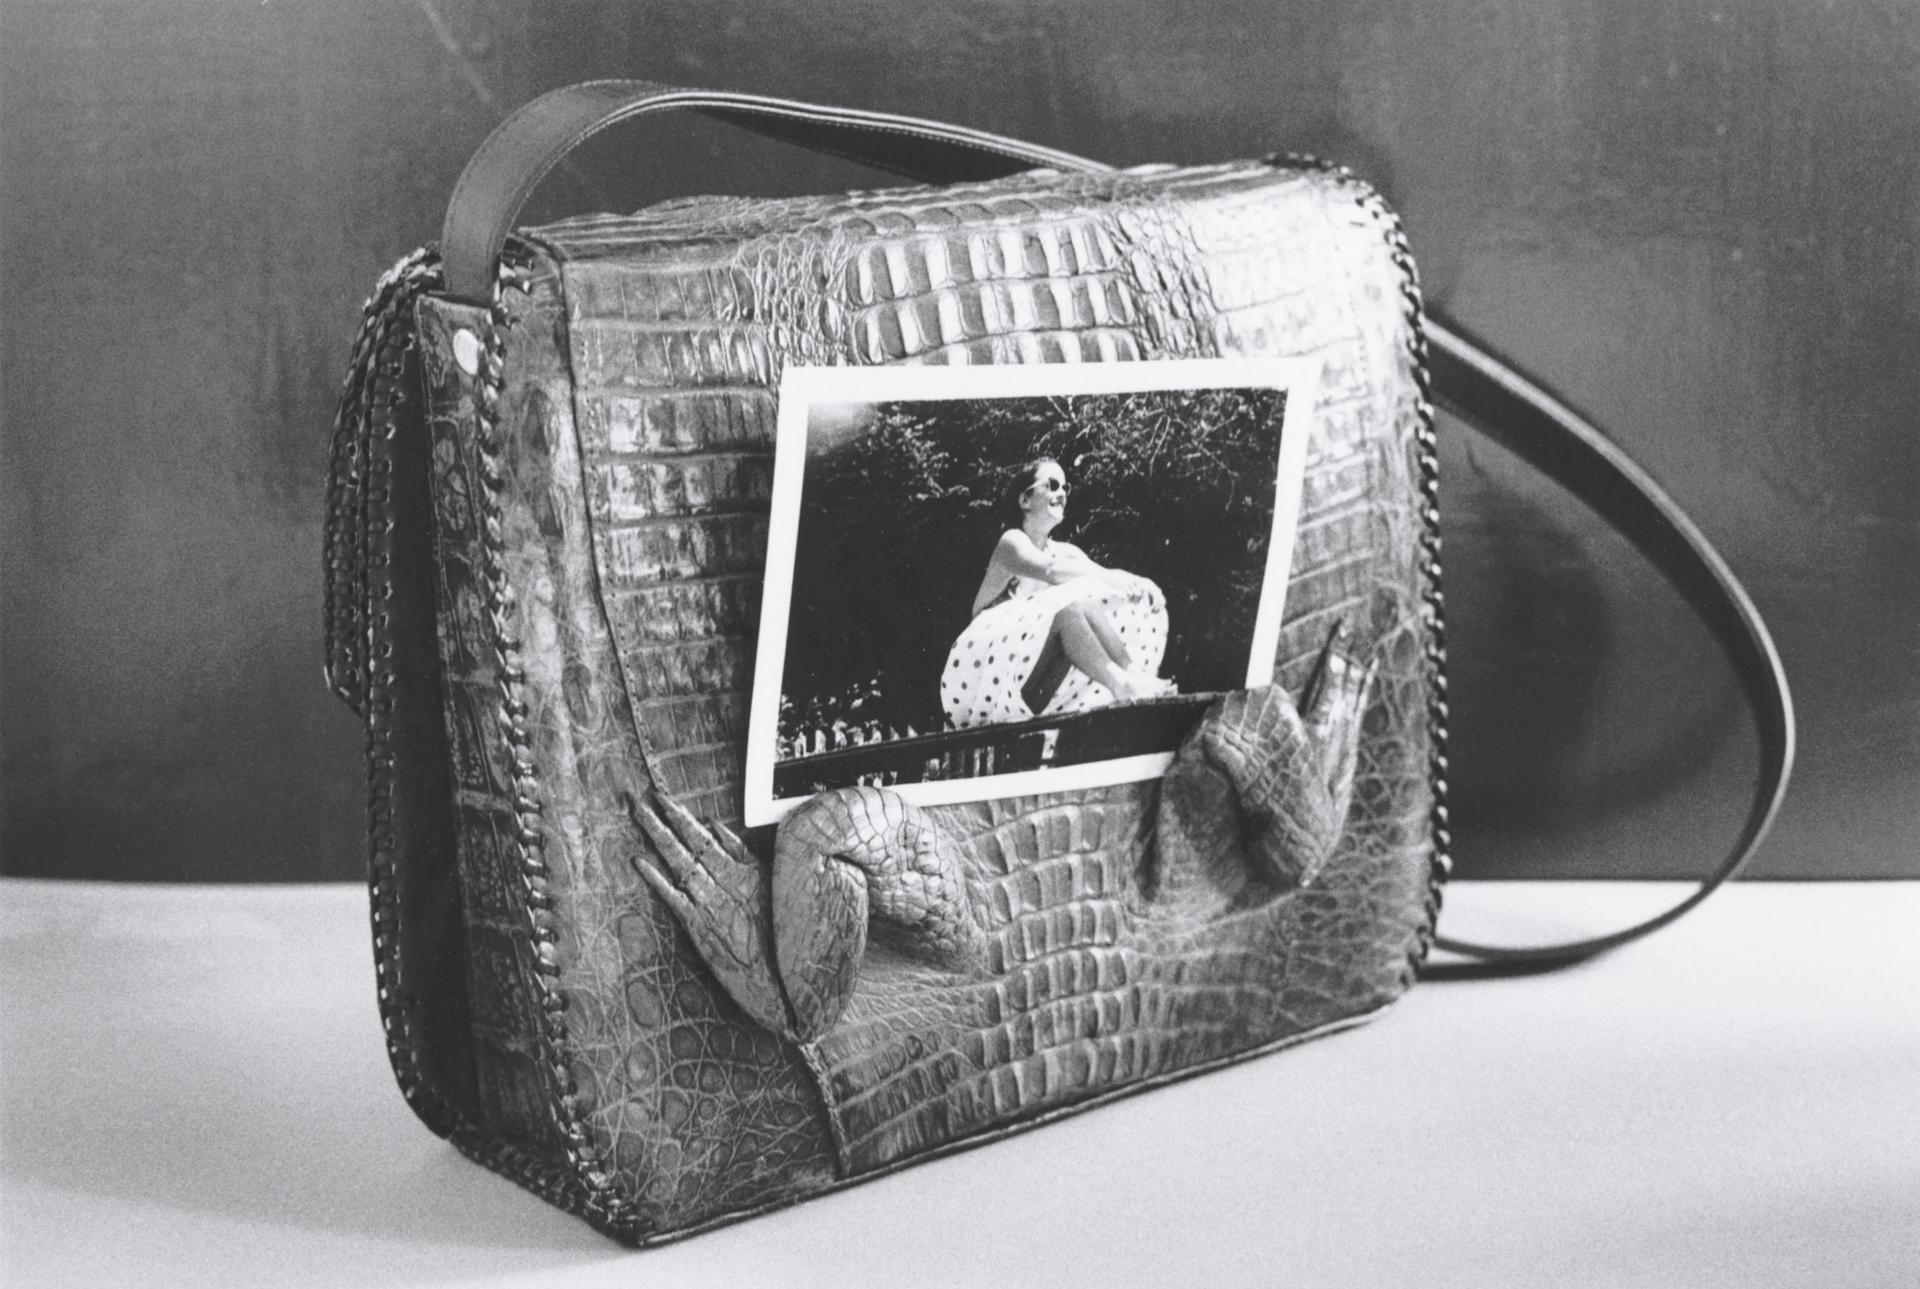 Raymonde April (1953) - Autoportrait au sac, 1977 (imprimé en 2007 / printed in 2007)